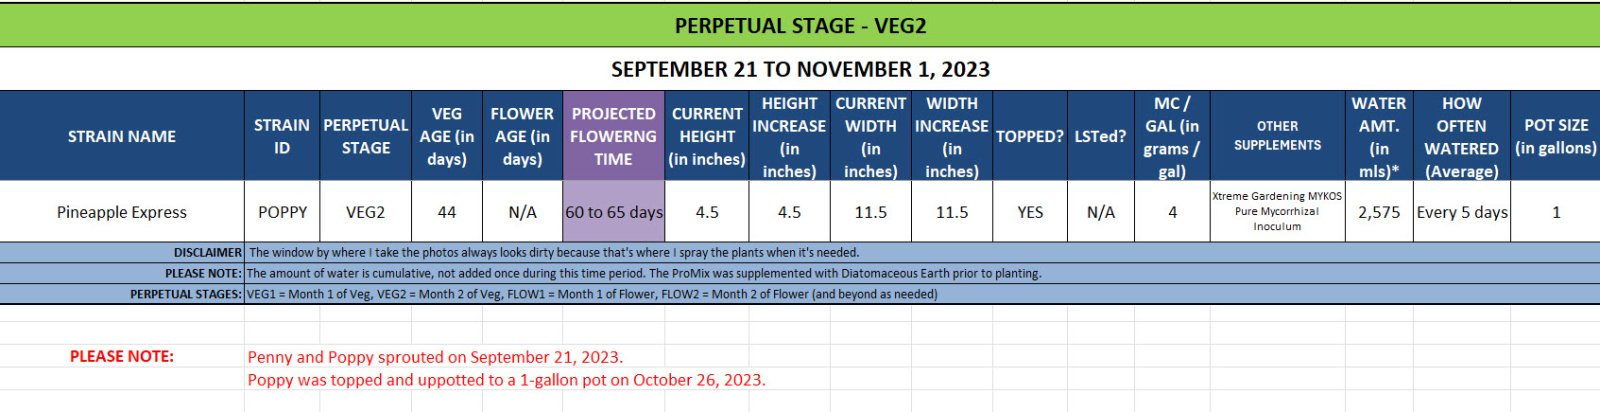 420 Update for Poppy - September 21 to November 1, 2023.jpg